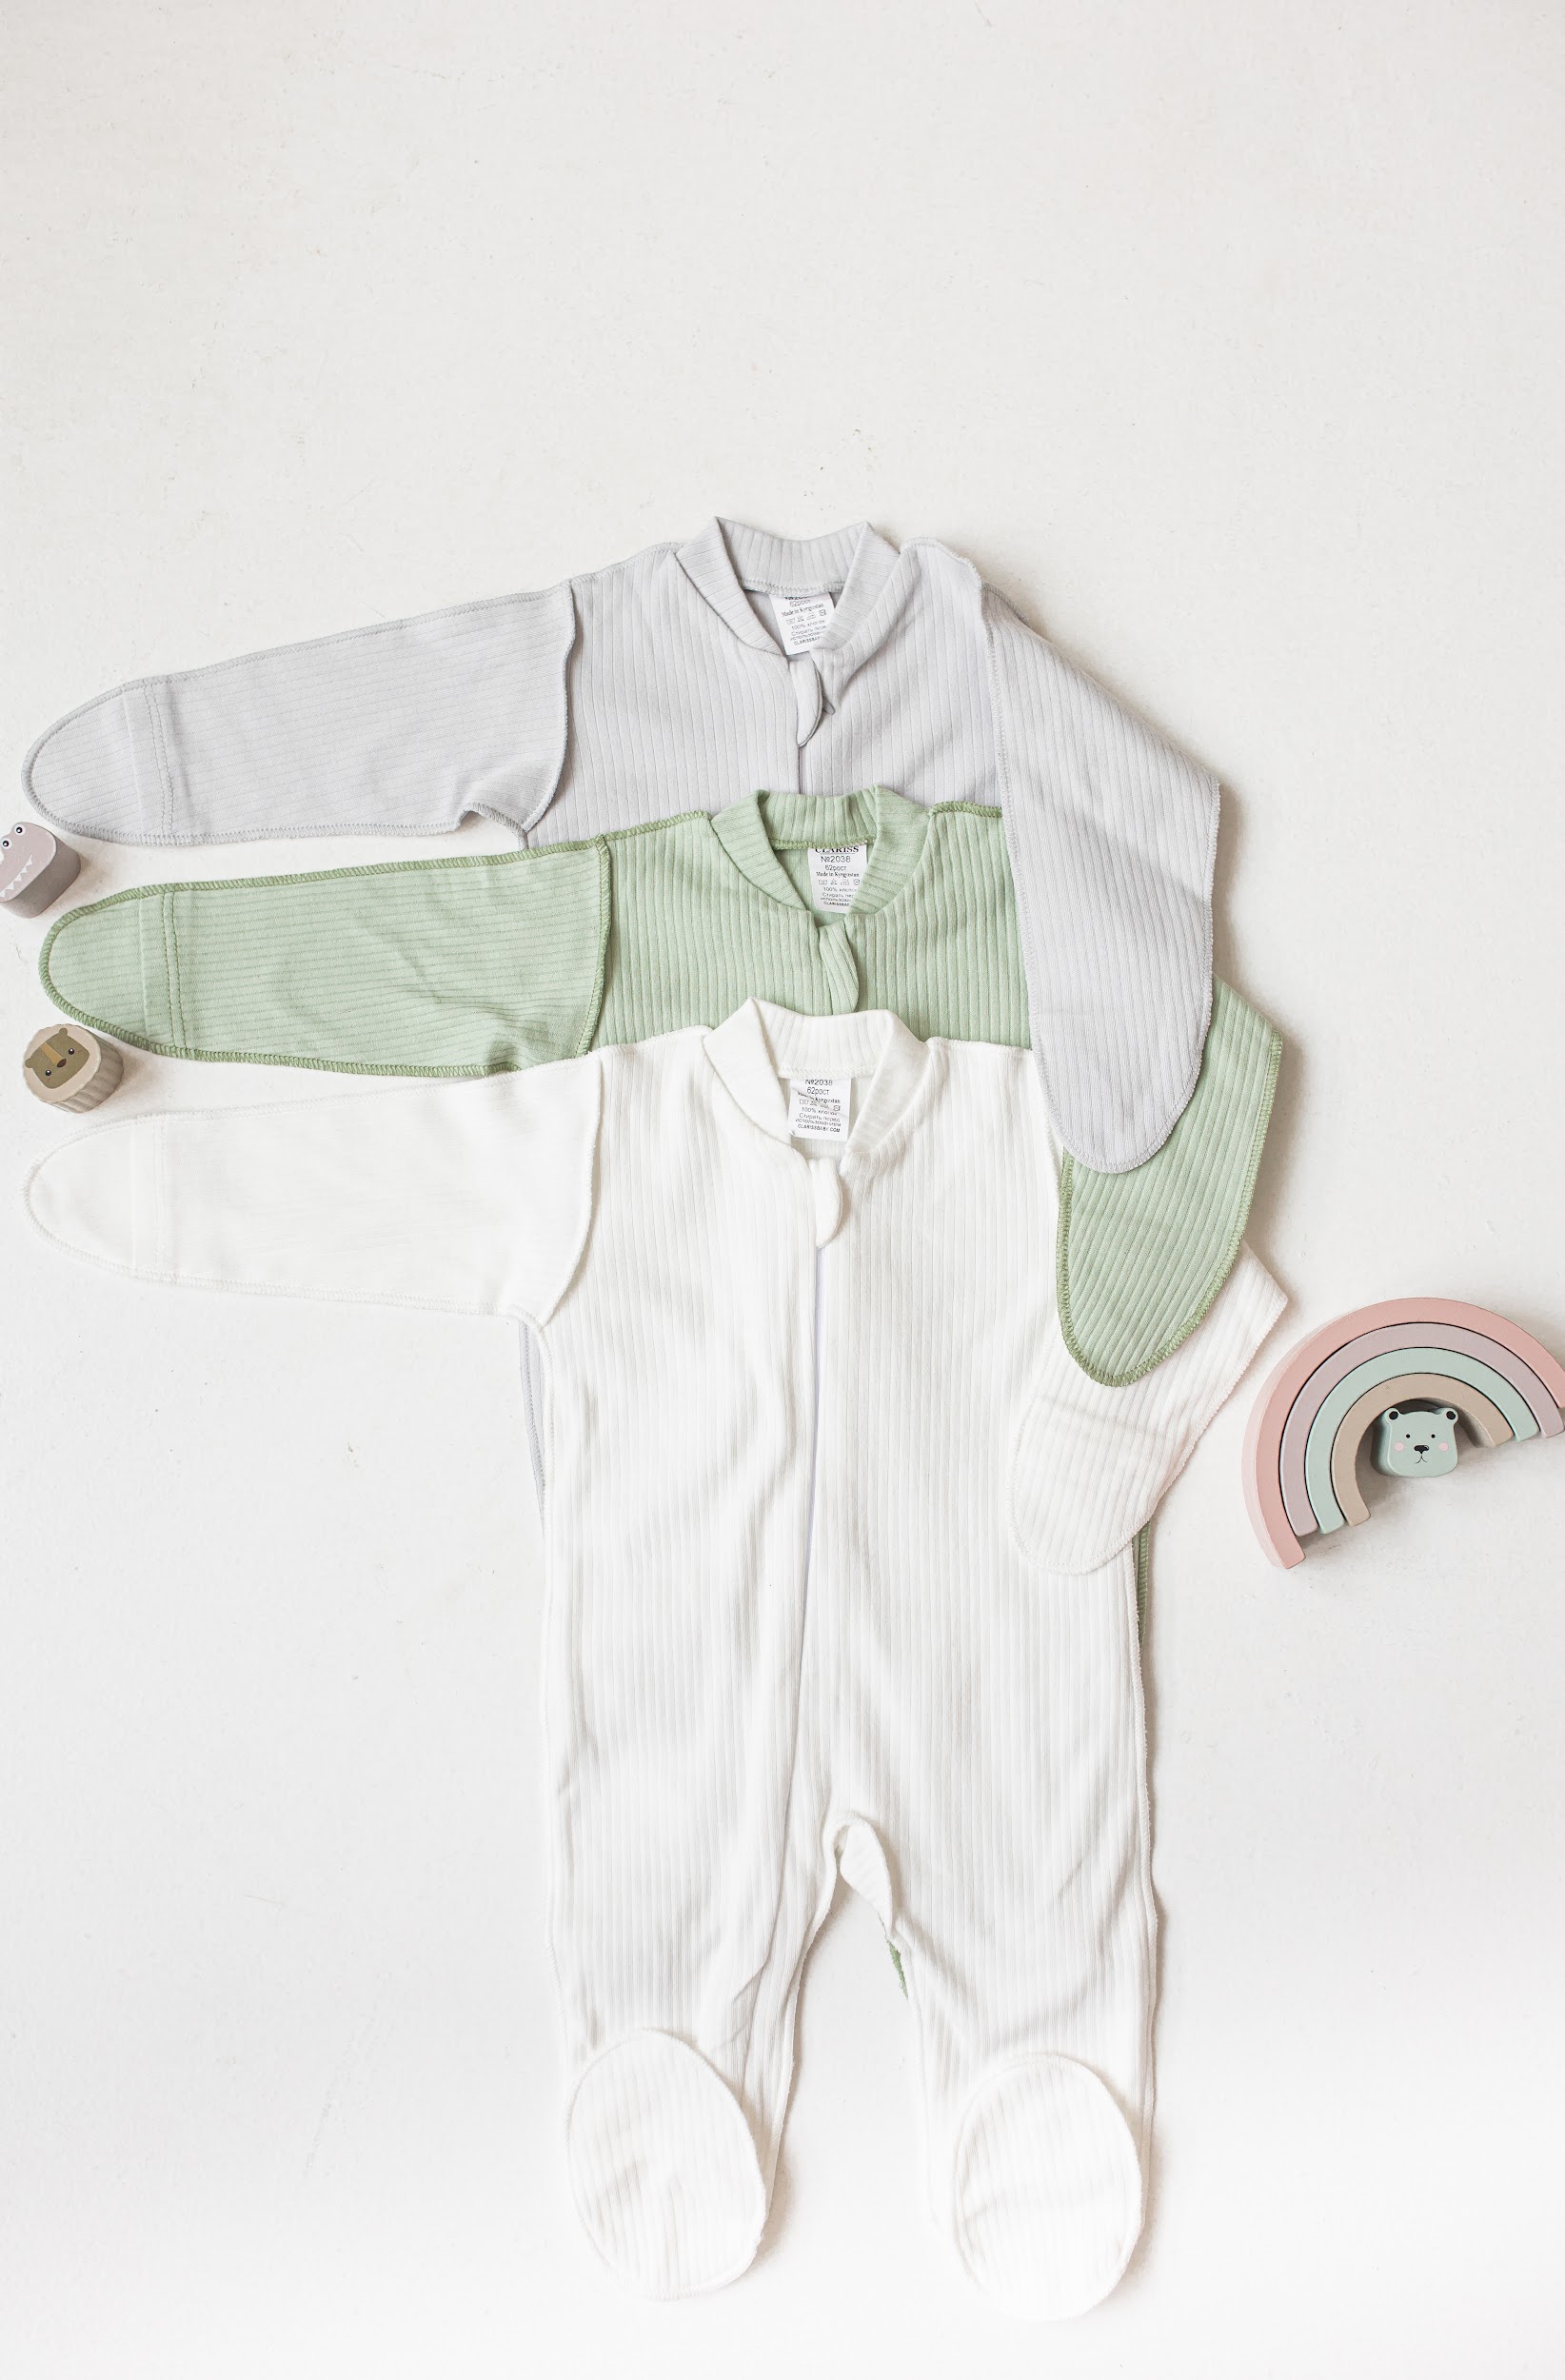 Комбинезон 3 шт. Clariss Eco-babycomb-12-3 colors-mint-grey-white - фото 1